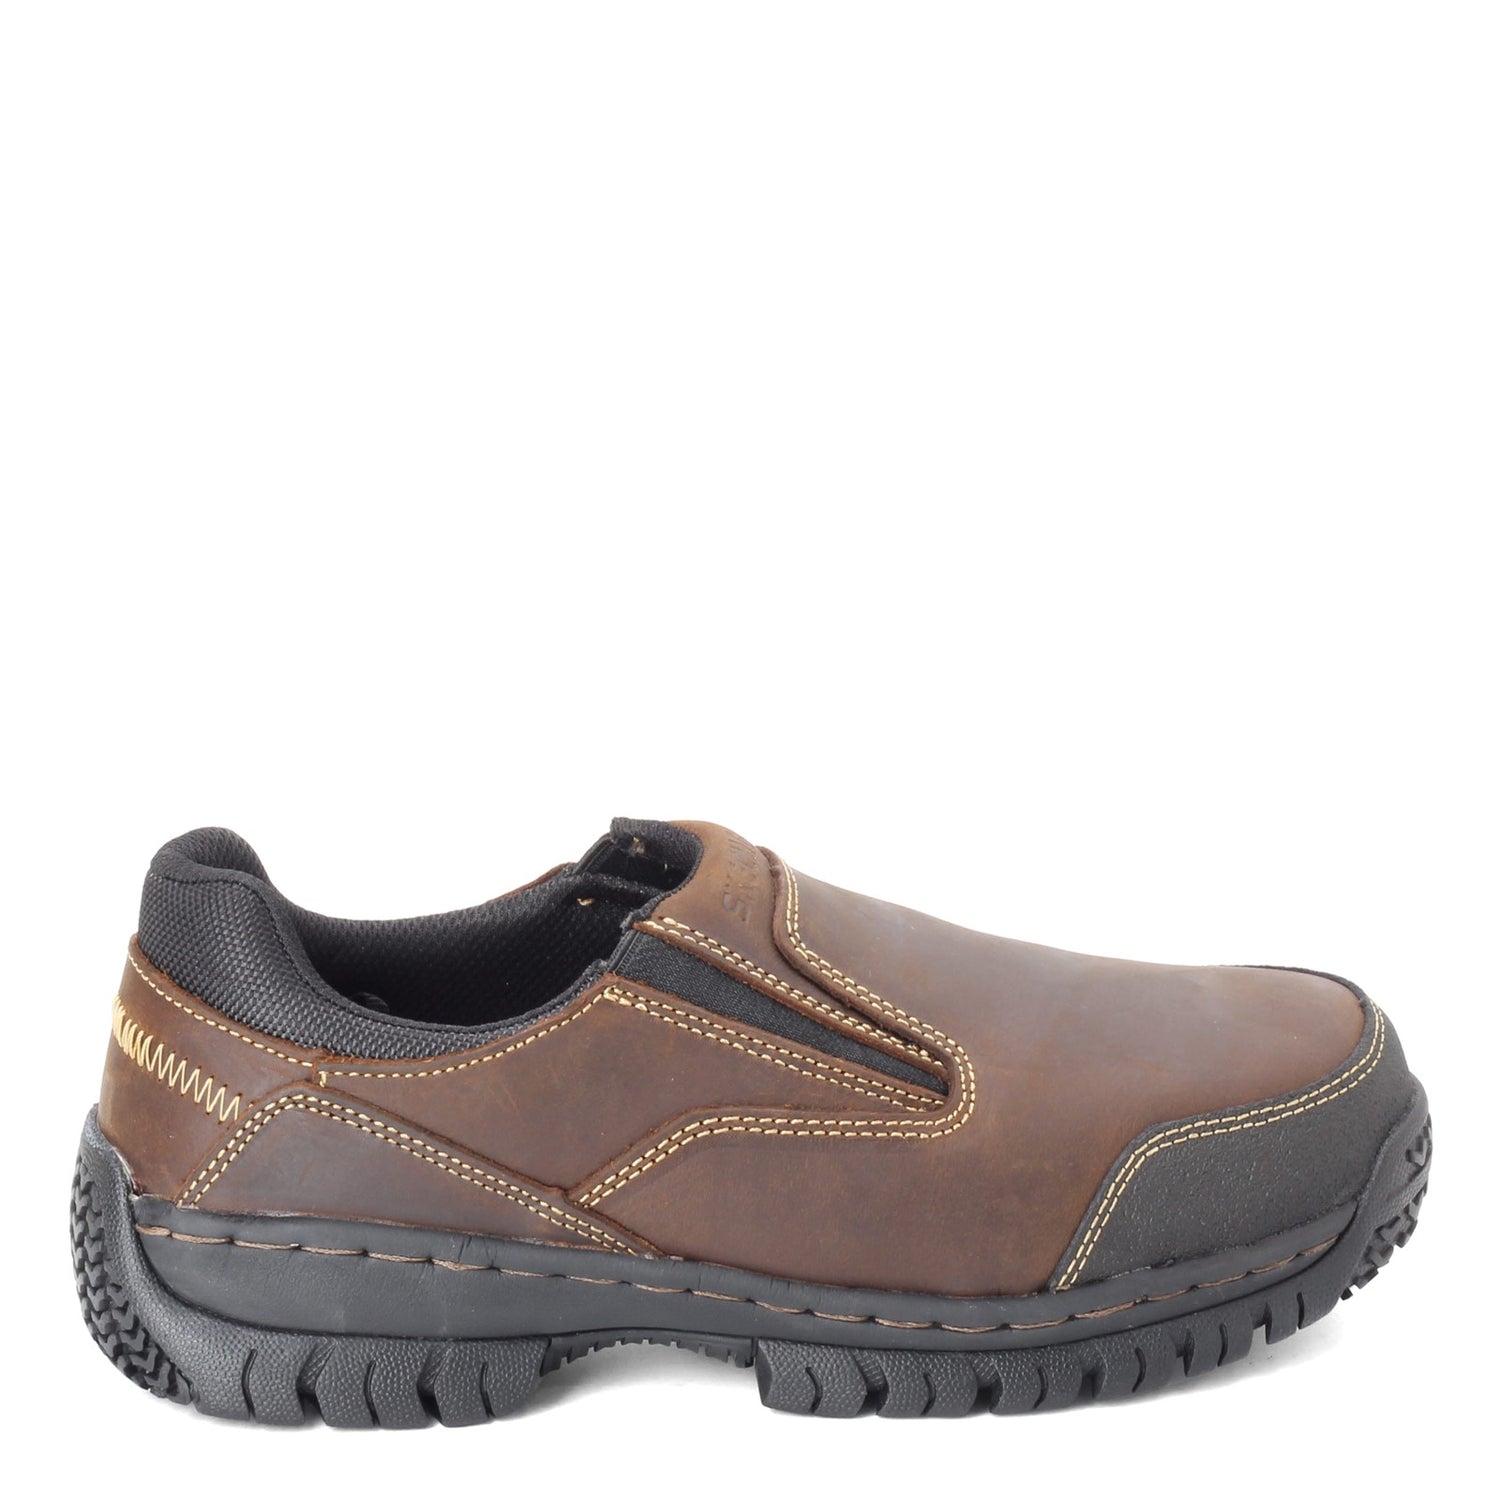 Peltz Shoes  Men's Skechers Relaxed Fit: Hartan ST Work Shoe - Wide Width Dark Brown 77066W-DKBR